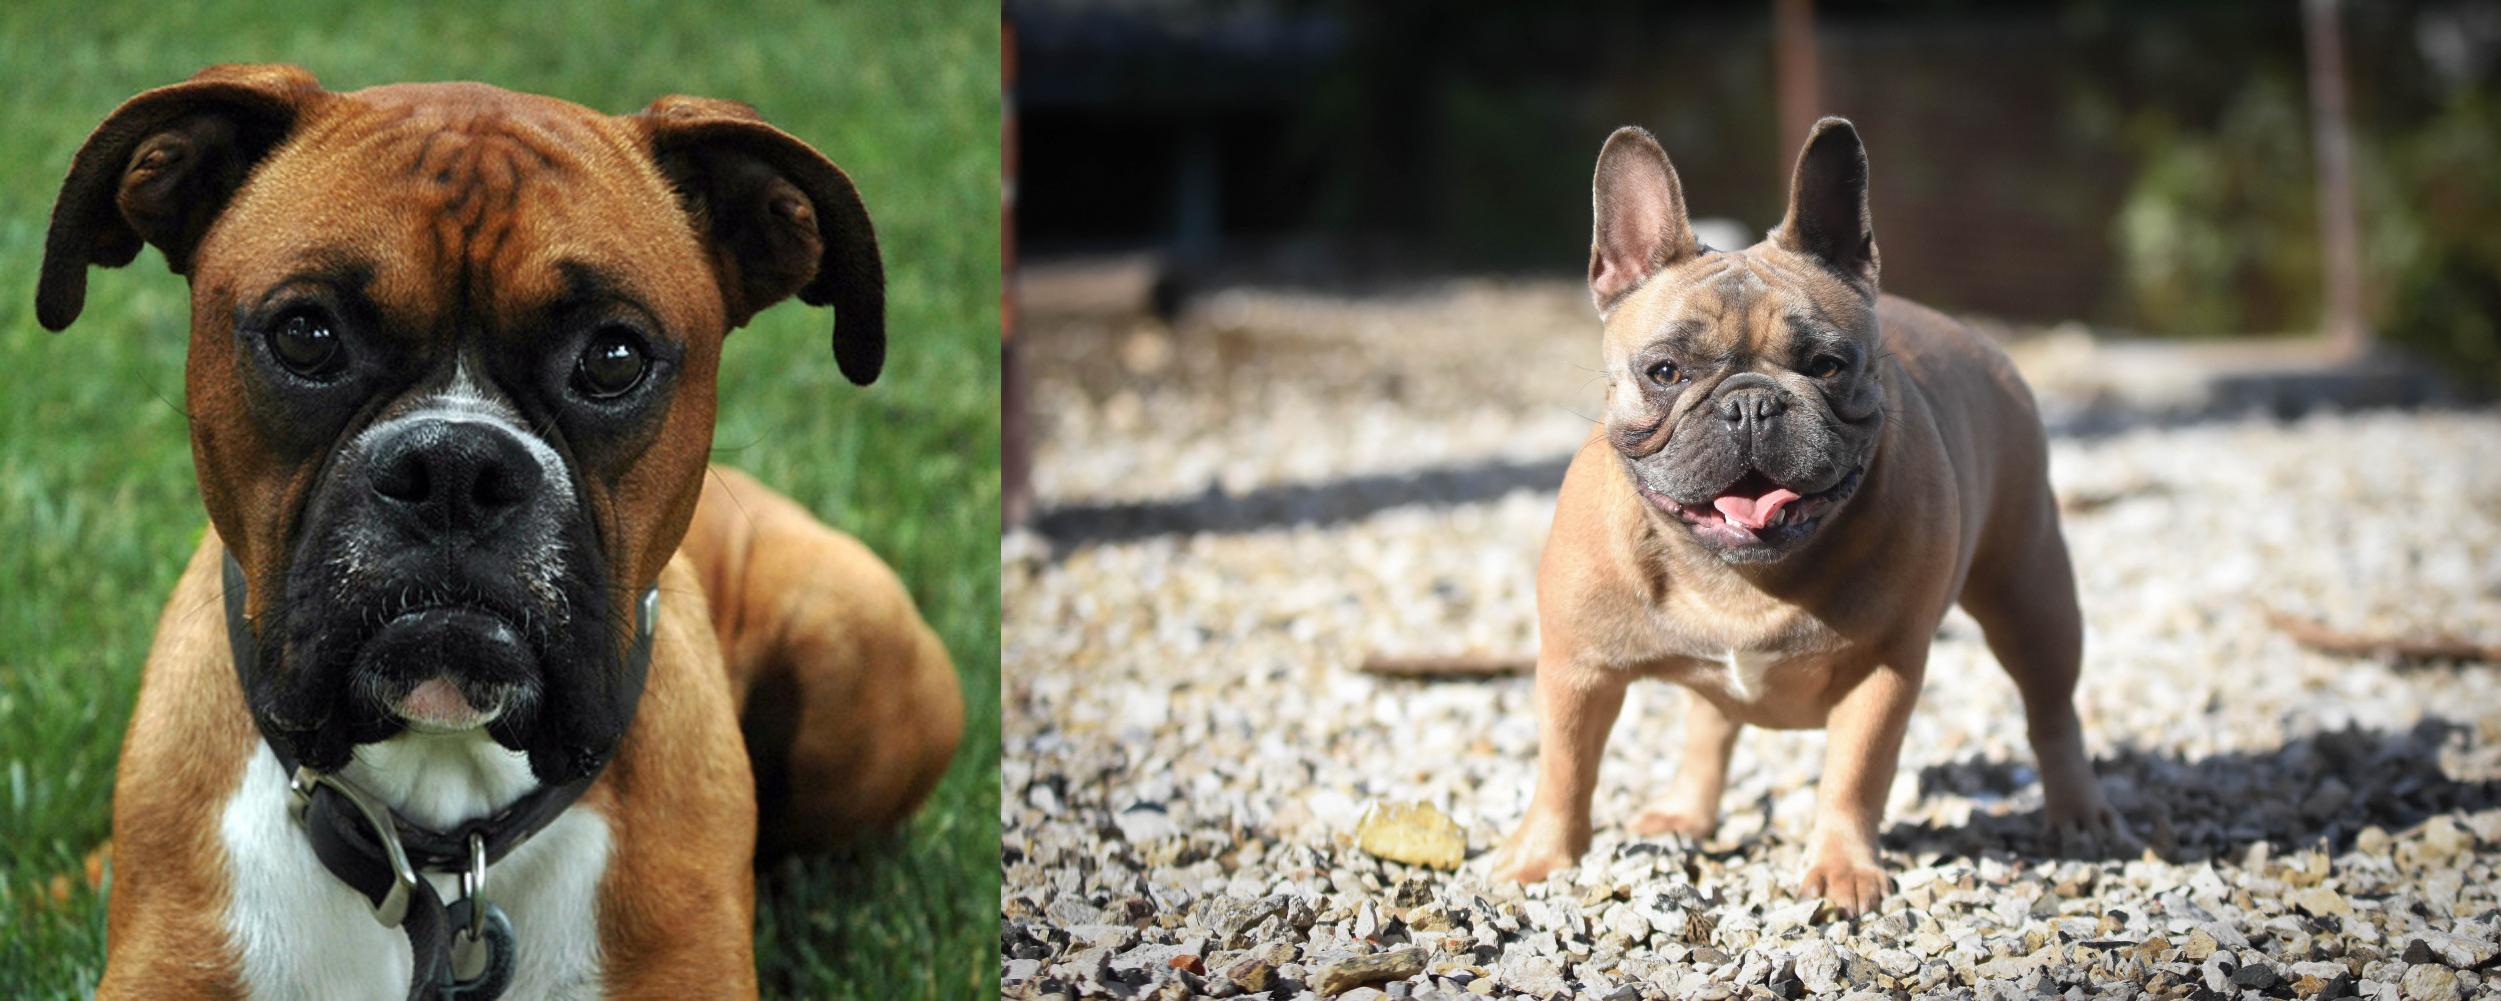 pug mix puppies | Zoe French Bulldog - Wikipedia French bulldog puppies, br...